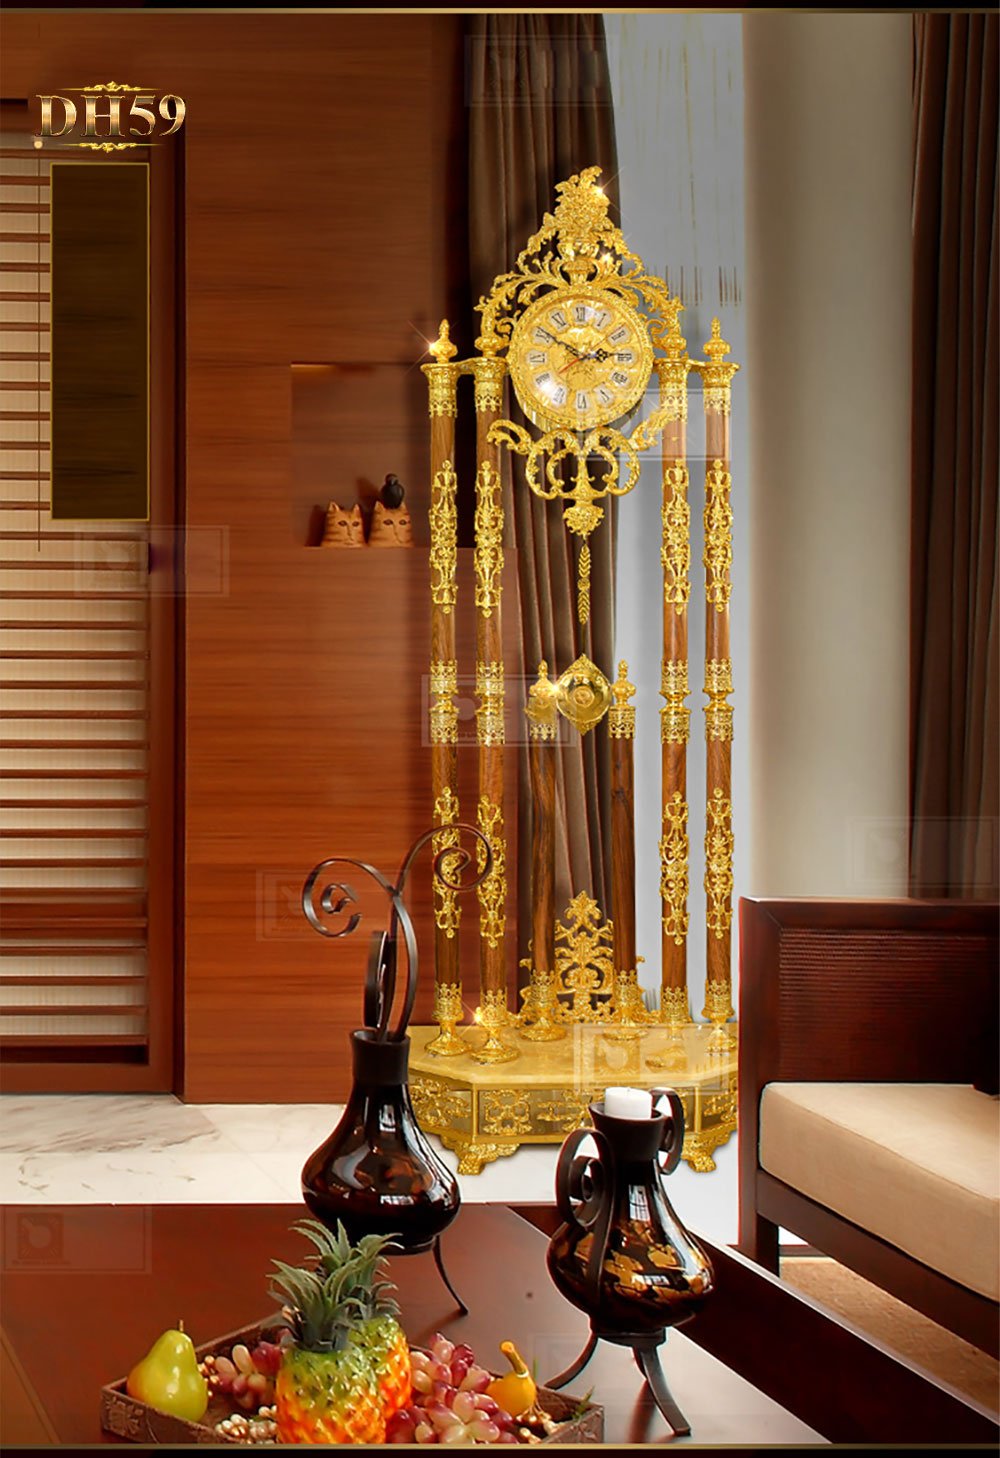 Đồng hồ cây cao cấp chạm khắc hoa văn tân cổ điền mạ vàng 24k sang trọng DH59